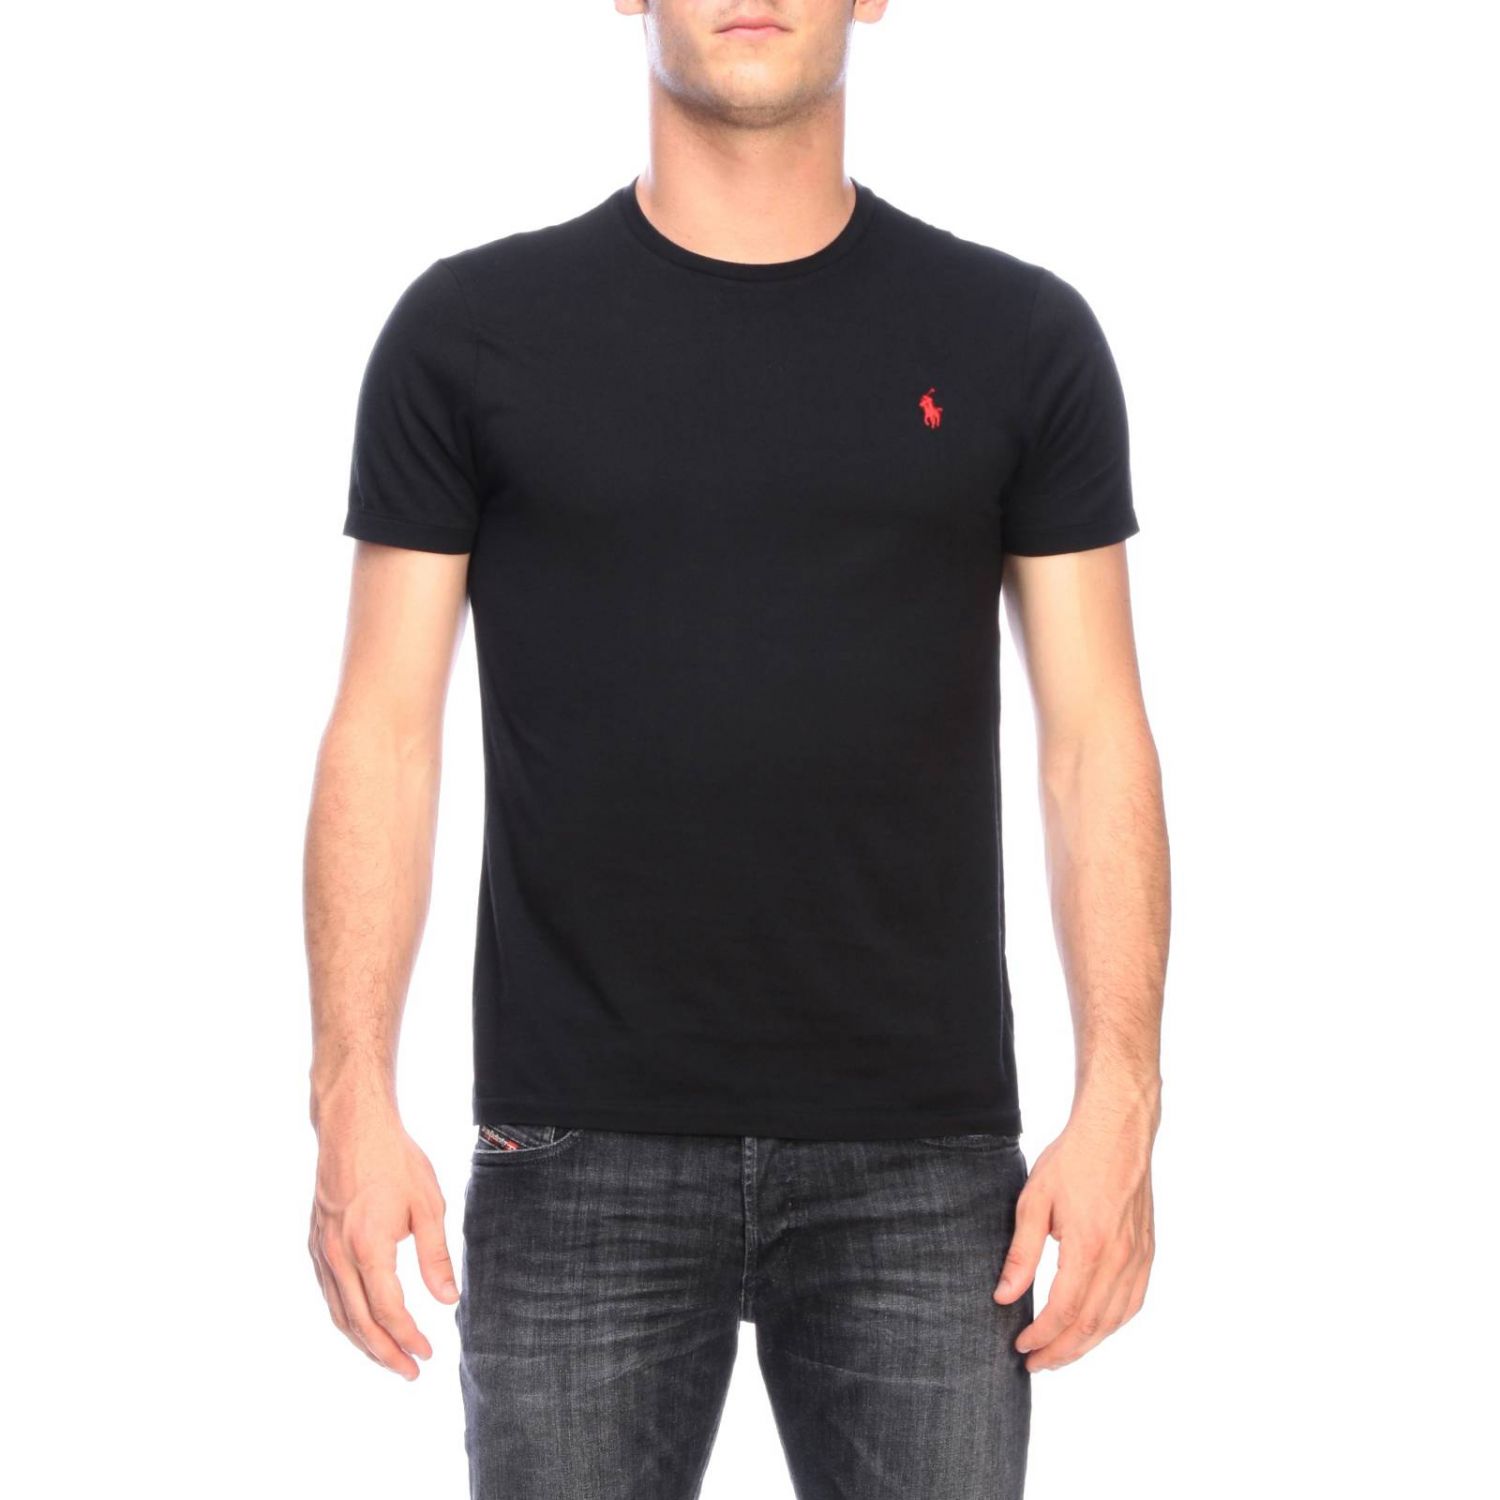 Polo Ralph Lauren Outlet: T-shirt a girocollo basic con logo ricamato |  T-Shirt Polo Ralph Lauren Uomo Nero | T-Shirt Polo Ralph Lauren 710680785  GIGLIO.COM